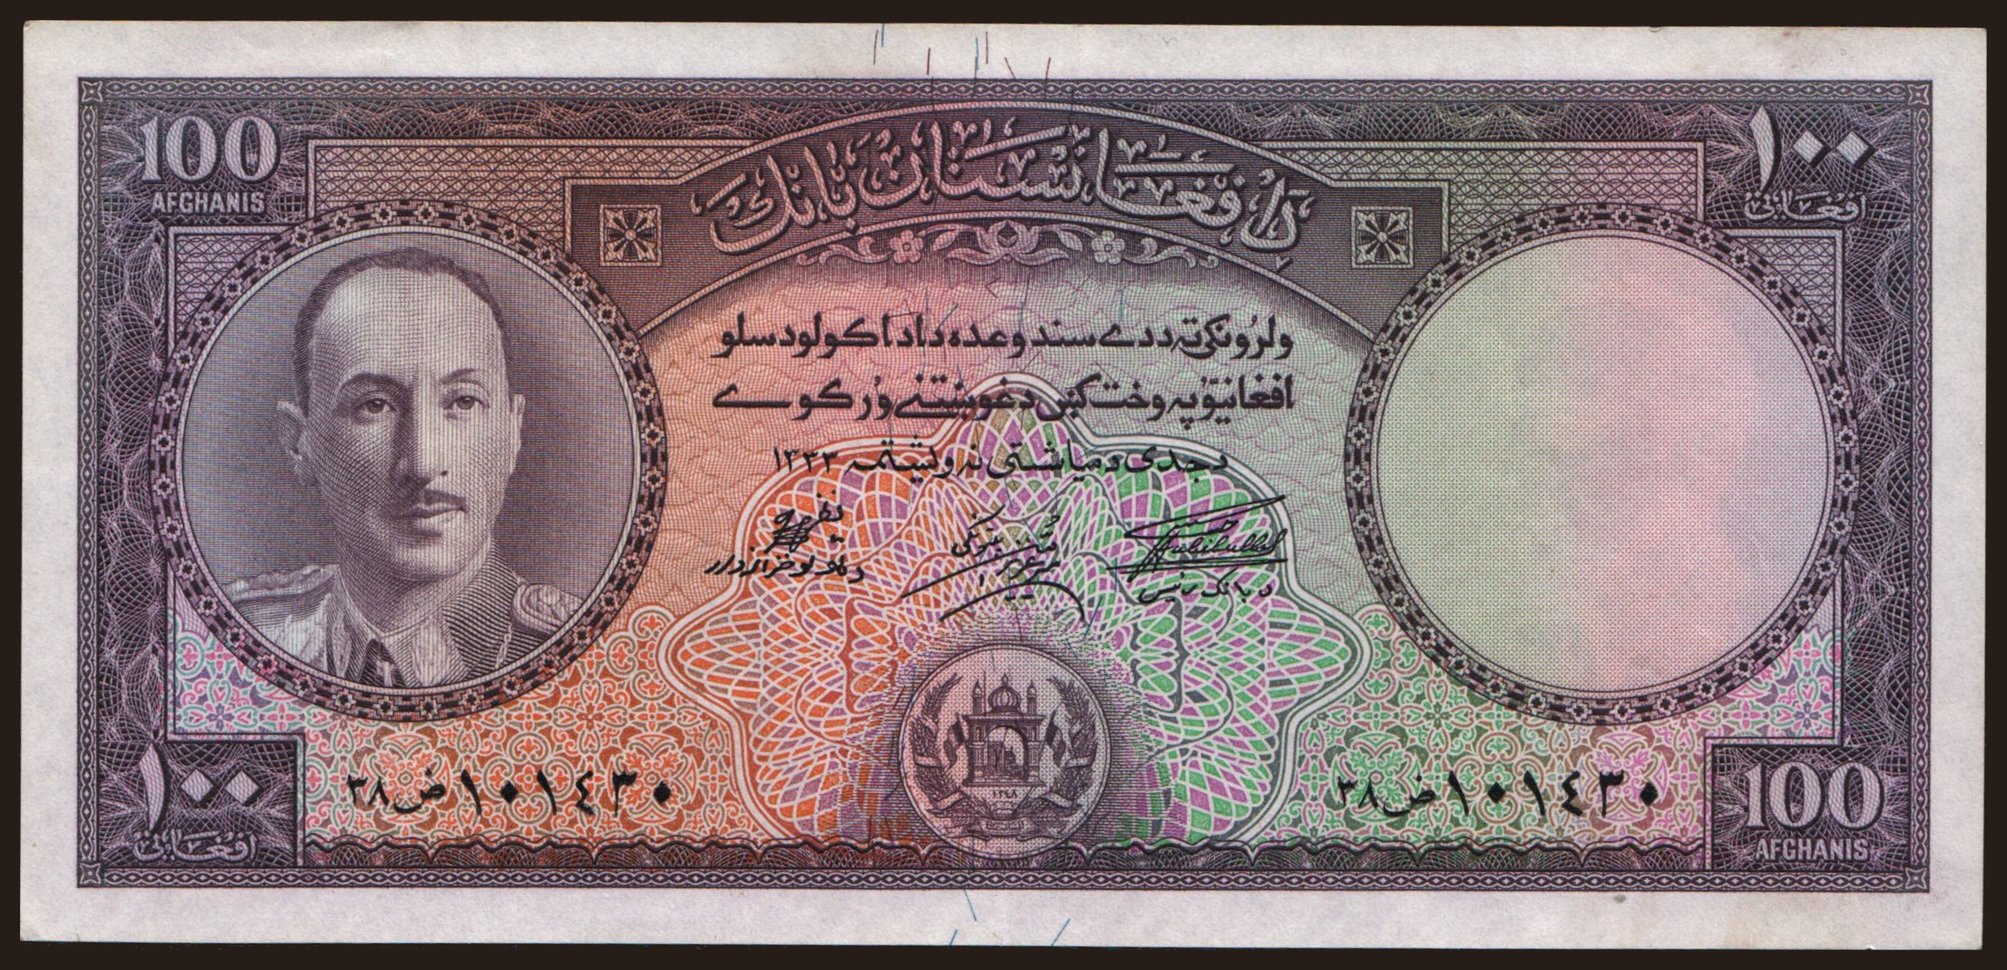 100 afghanis, 1954